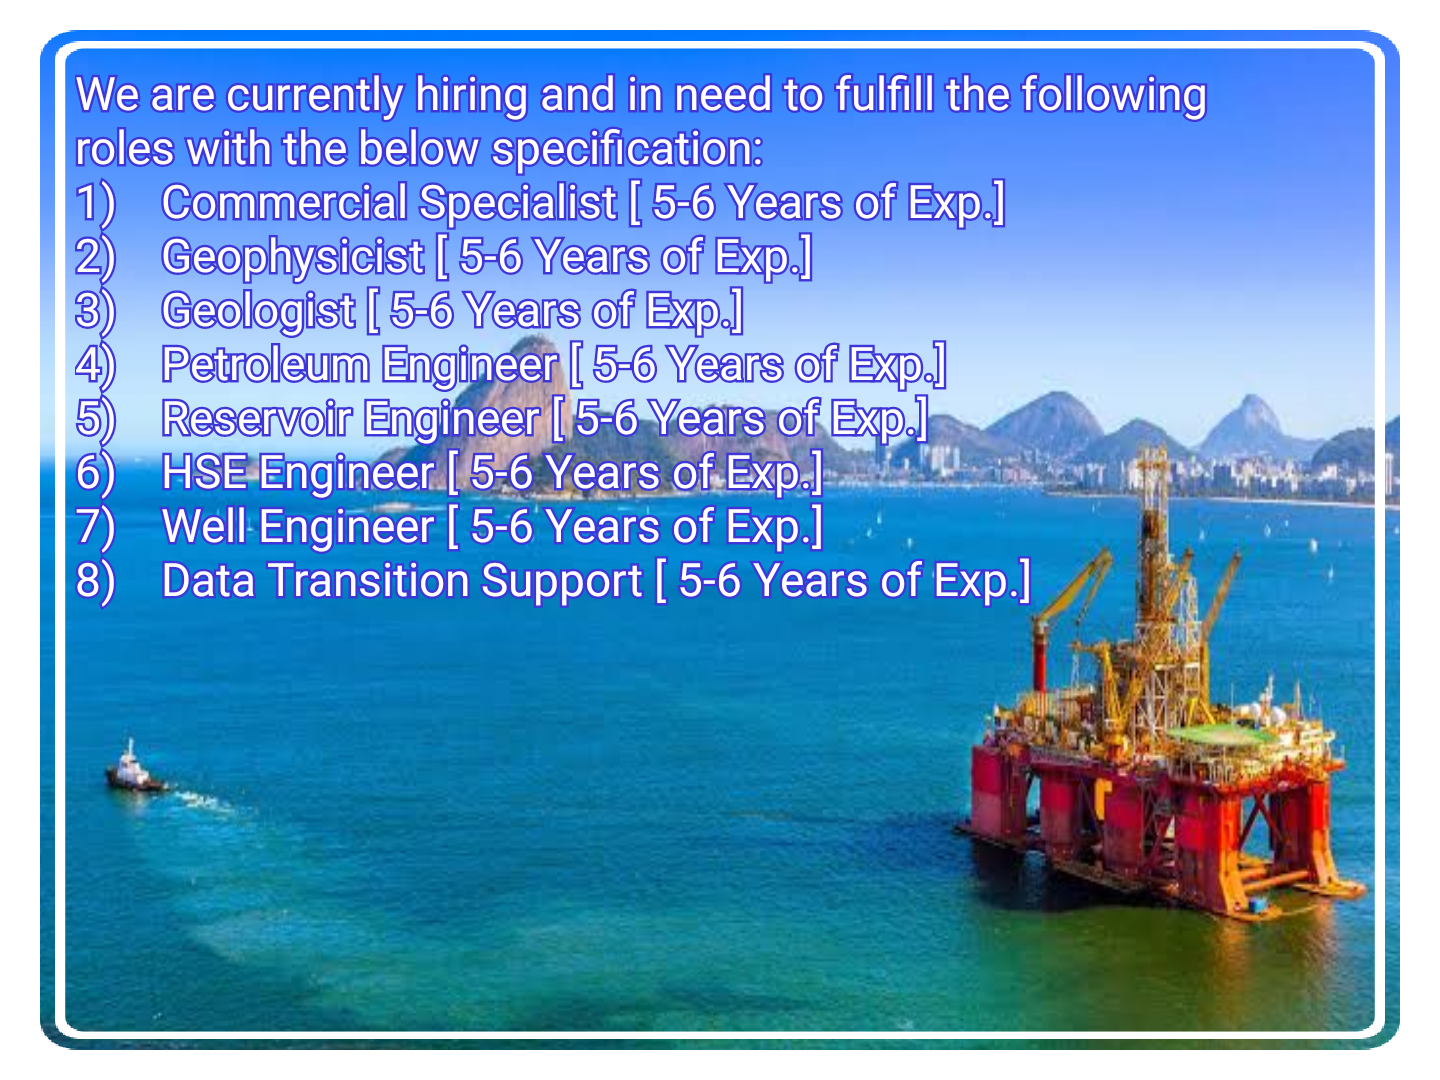 Geologist, Petrolium, Reservoir, HSE, Well & Data Transition Engineer Jobs